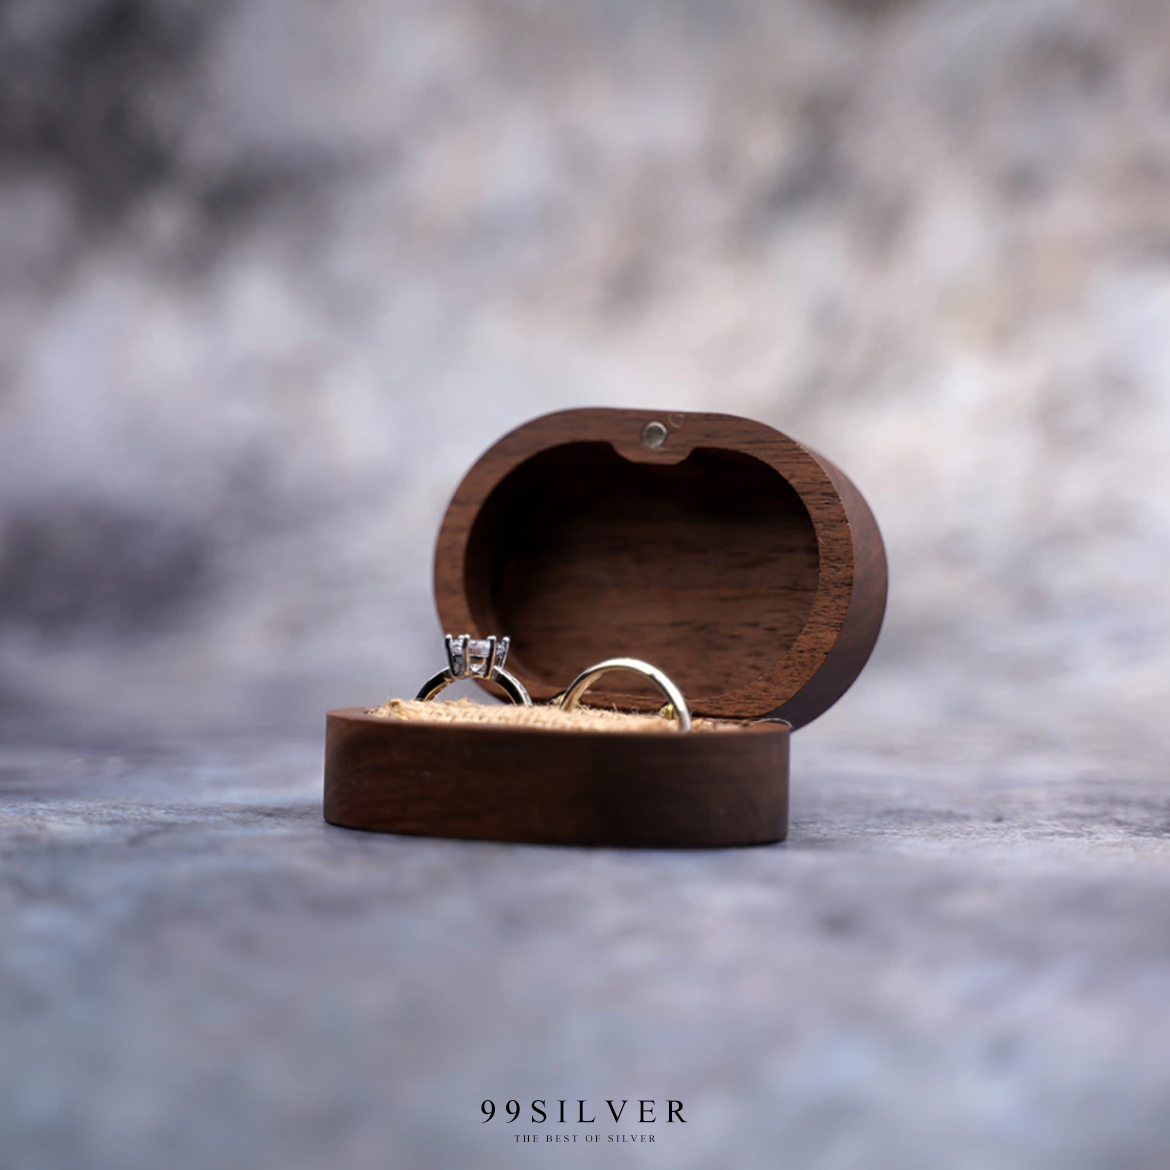 กล่องใส่แหวนแบบรี ทำจากไม้แท้ ข้างในมีผ้าป่าน สำหรับเสียบแหวนคู่อย่างดี ฝาเป็นแม่เหล็ก